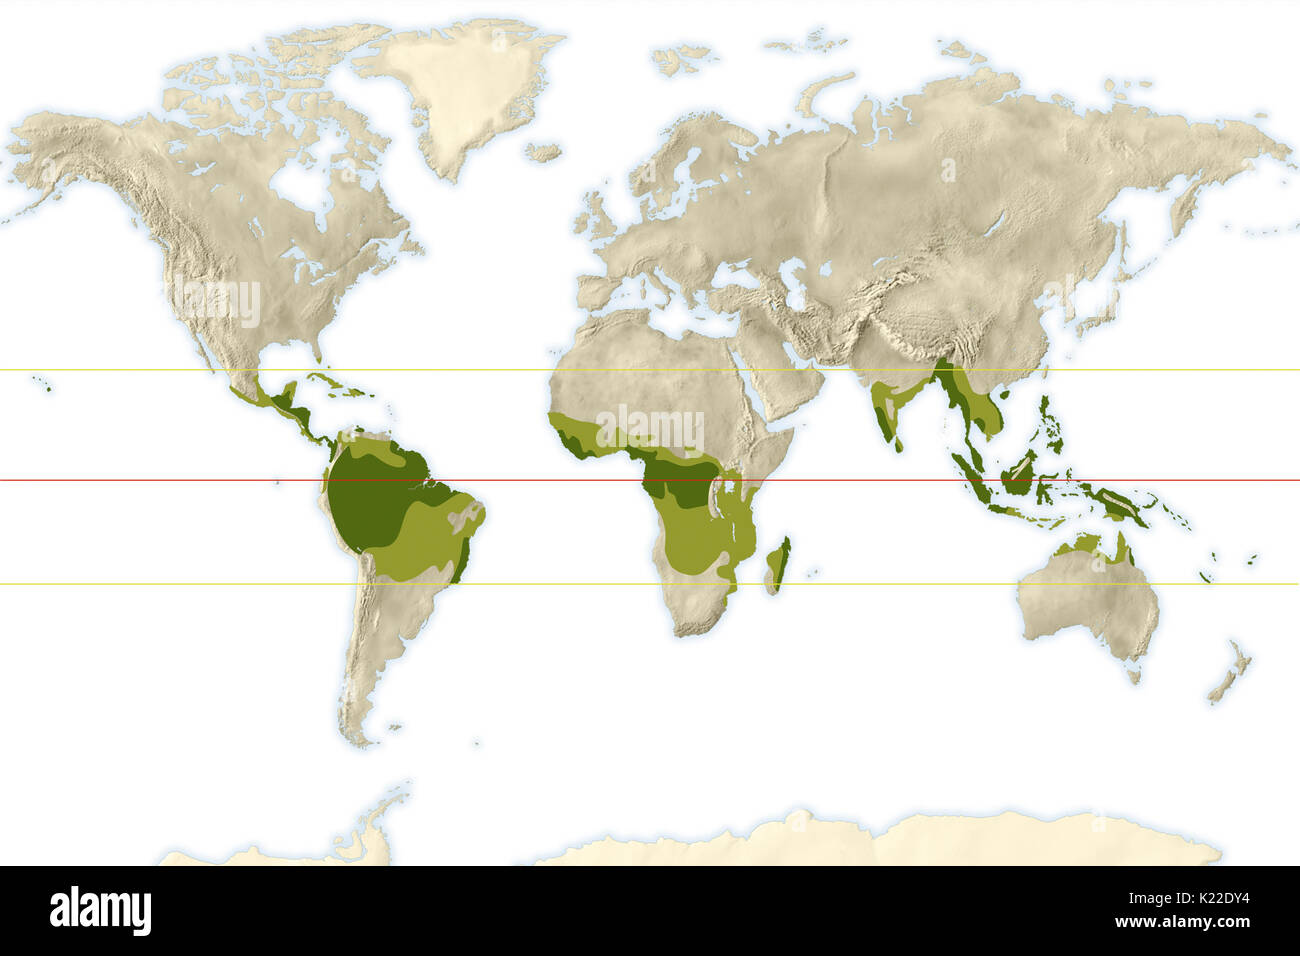 Der Amazonas und Kongo Flusseinzugsgebiete, rund um den Äquator befinden, sind in einem tropischen Klima, wie dem Littoral Gebiete in Südostasien, Australien, Nord- und Mittelamerika. Die nassen und trockenen tropischen Klima ist vor allem in Afrika, Südamerika und Asien. Verschiedene Arten von Vegetation (trockenen tropischen Wald, Savanne) Entwicklung in diesen Regionen, der Kennzeichnung eine Übergangszone zwischen Äquatorialen, semi-ariden und gemäßigten Zonen. Stockfoto